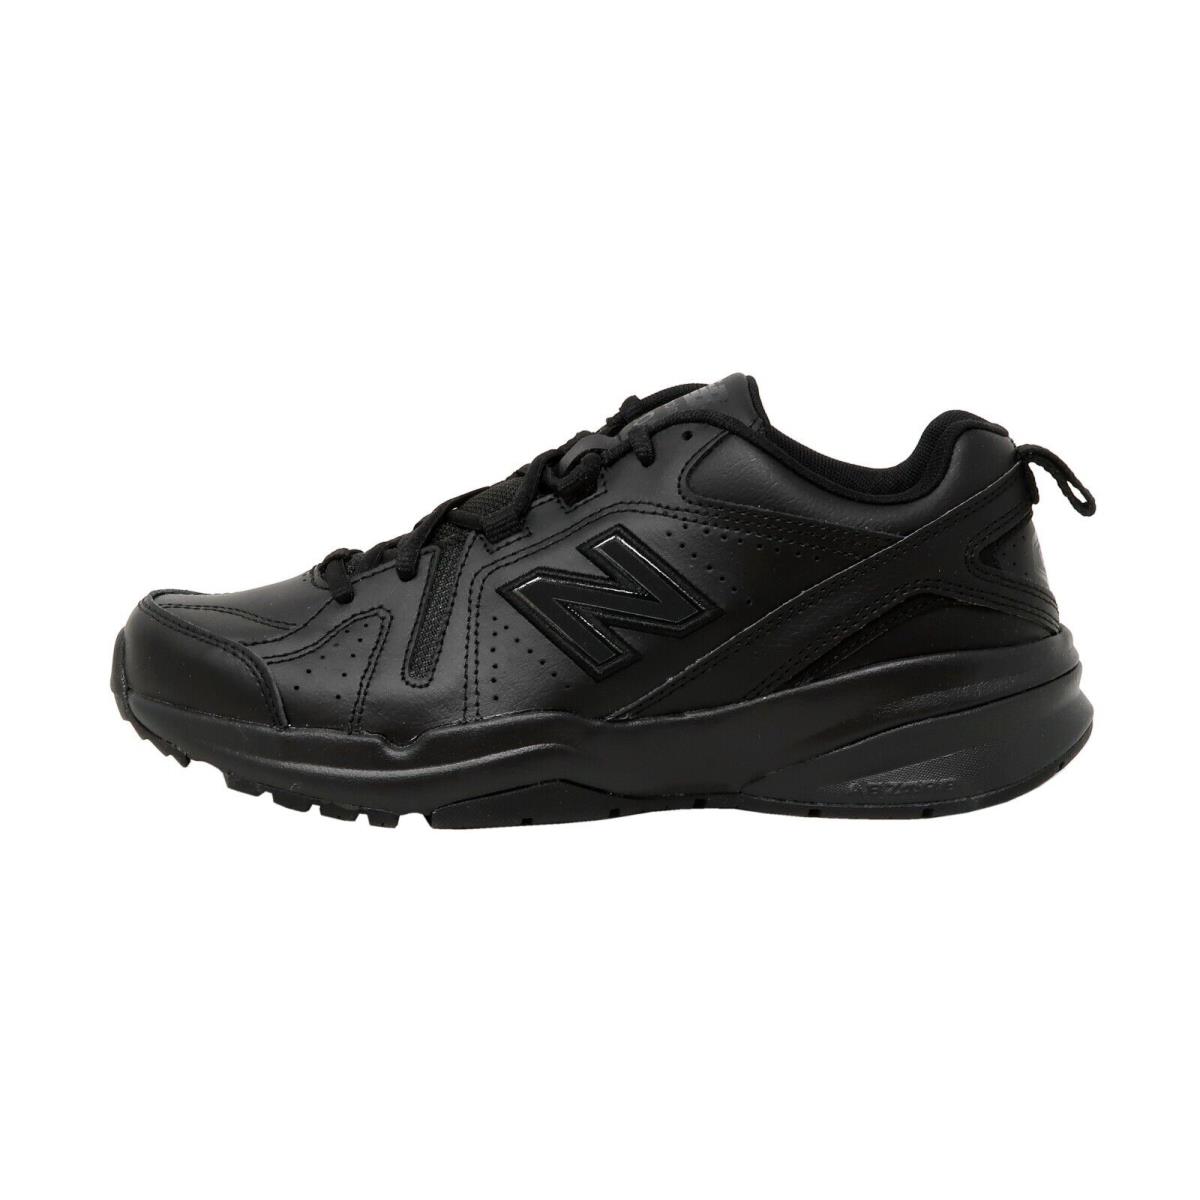 New Balance 608v5 Men`s Training Shoes Sneakers MX608AB5 - Black/black